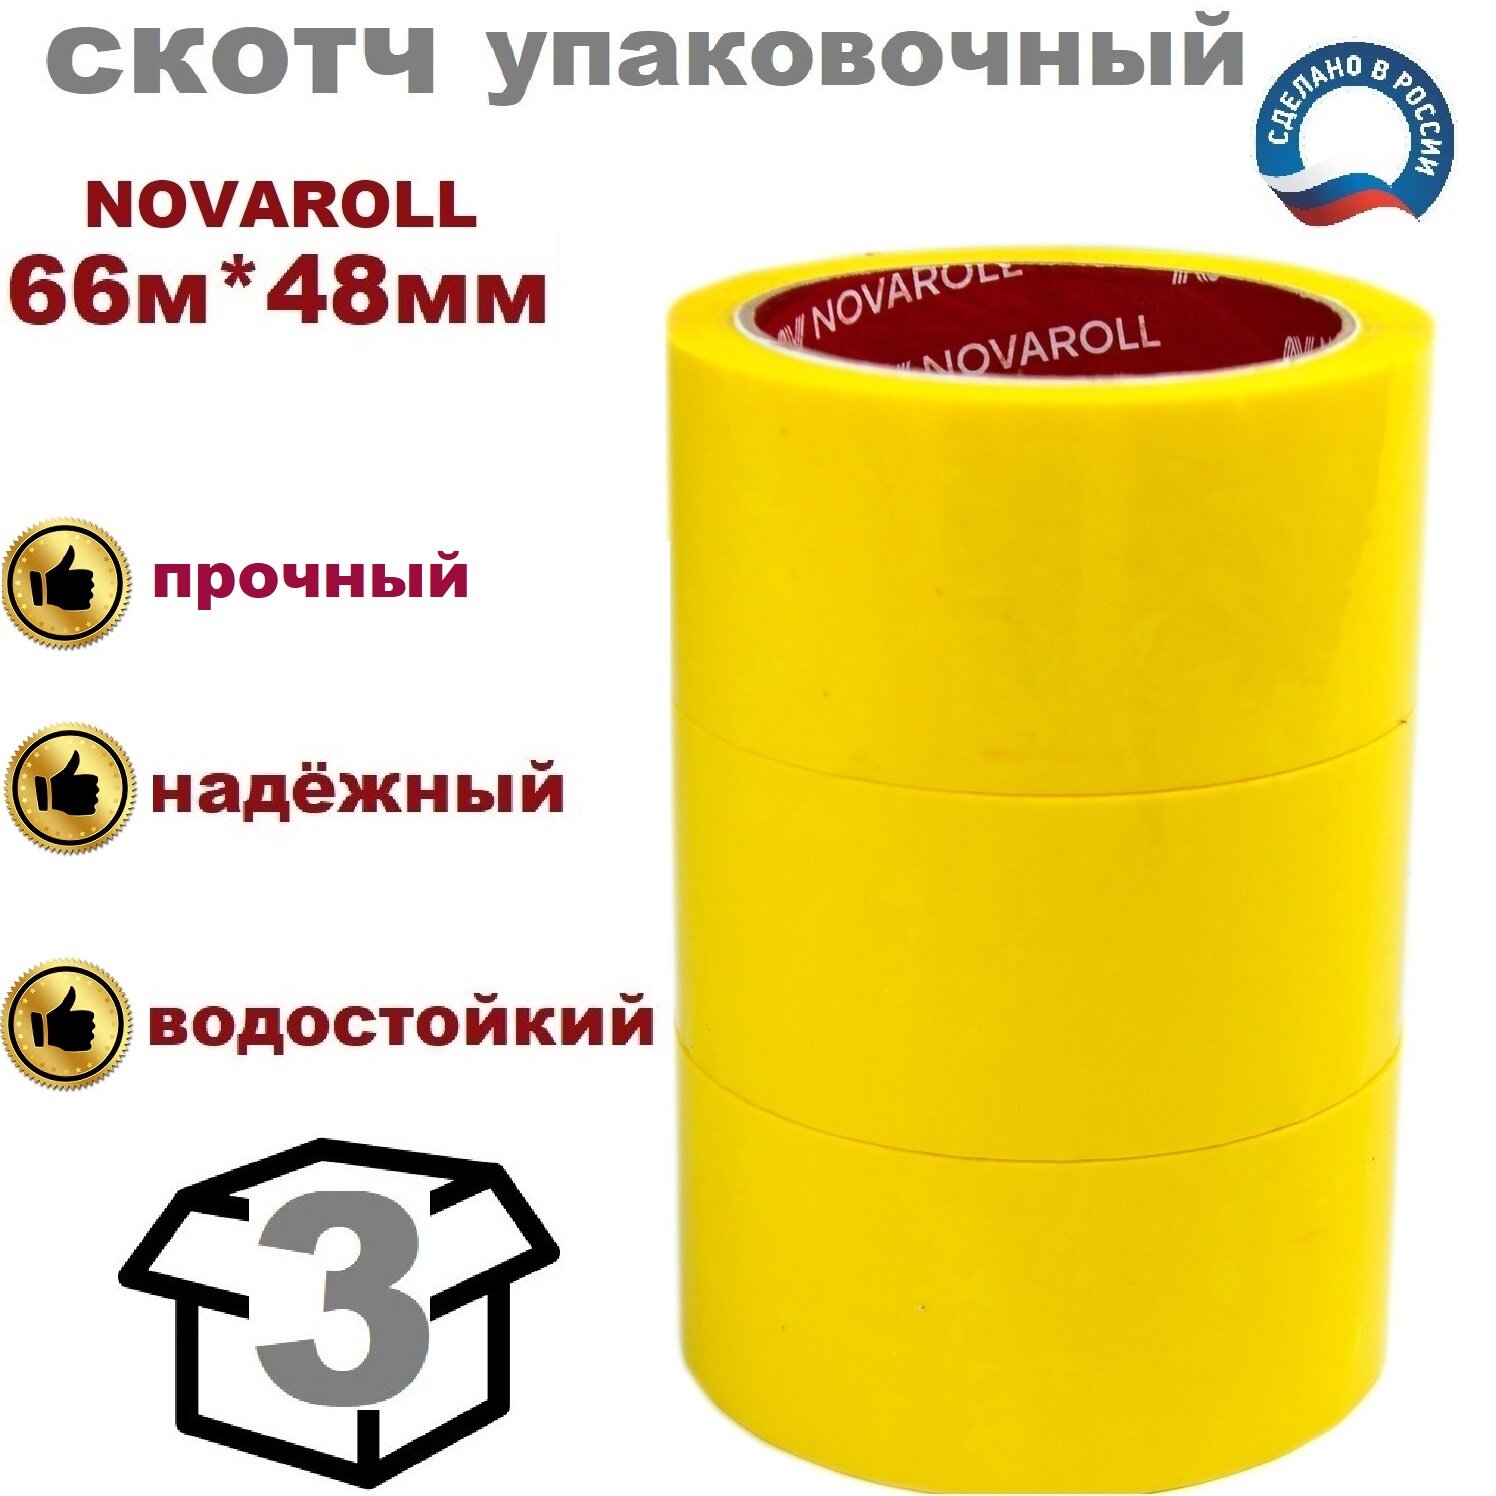 Novaroll 48мм*66 м 6 шт в наборе клейкая лента канцелярская широкая липкая желтая / скотч цветной желтый